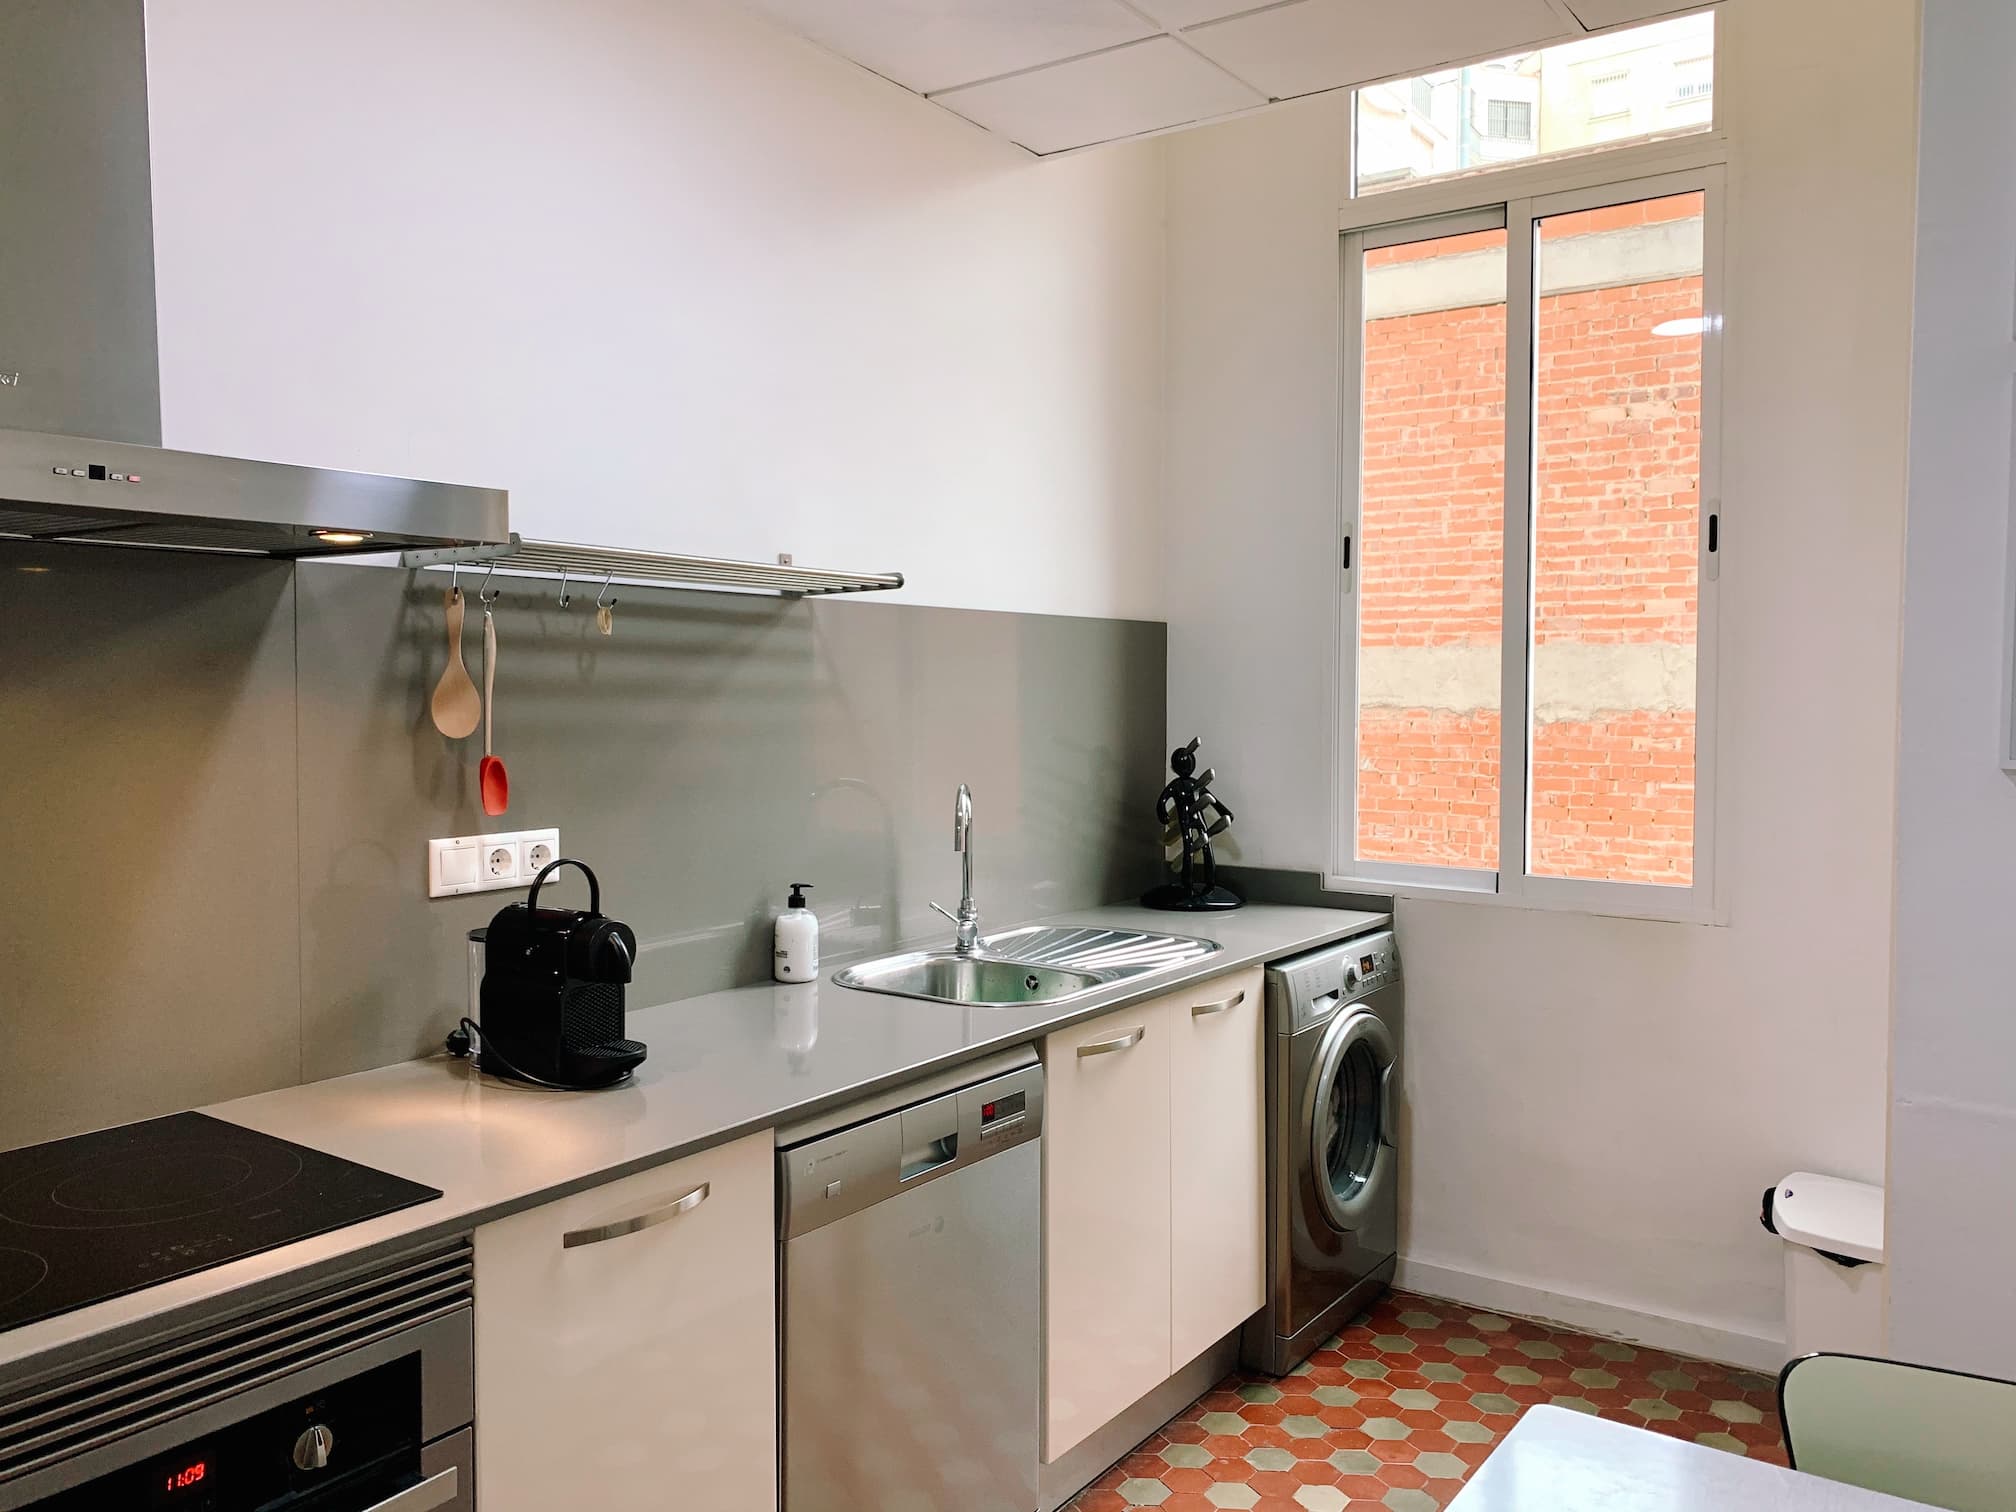 Salamanca - Apartment for rent per month in Valencia